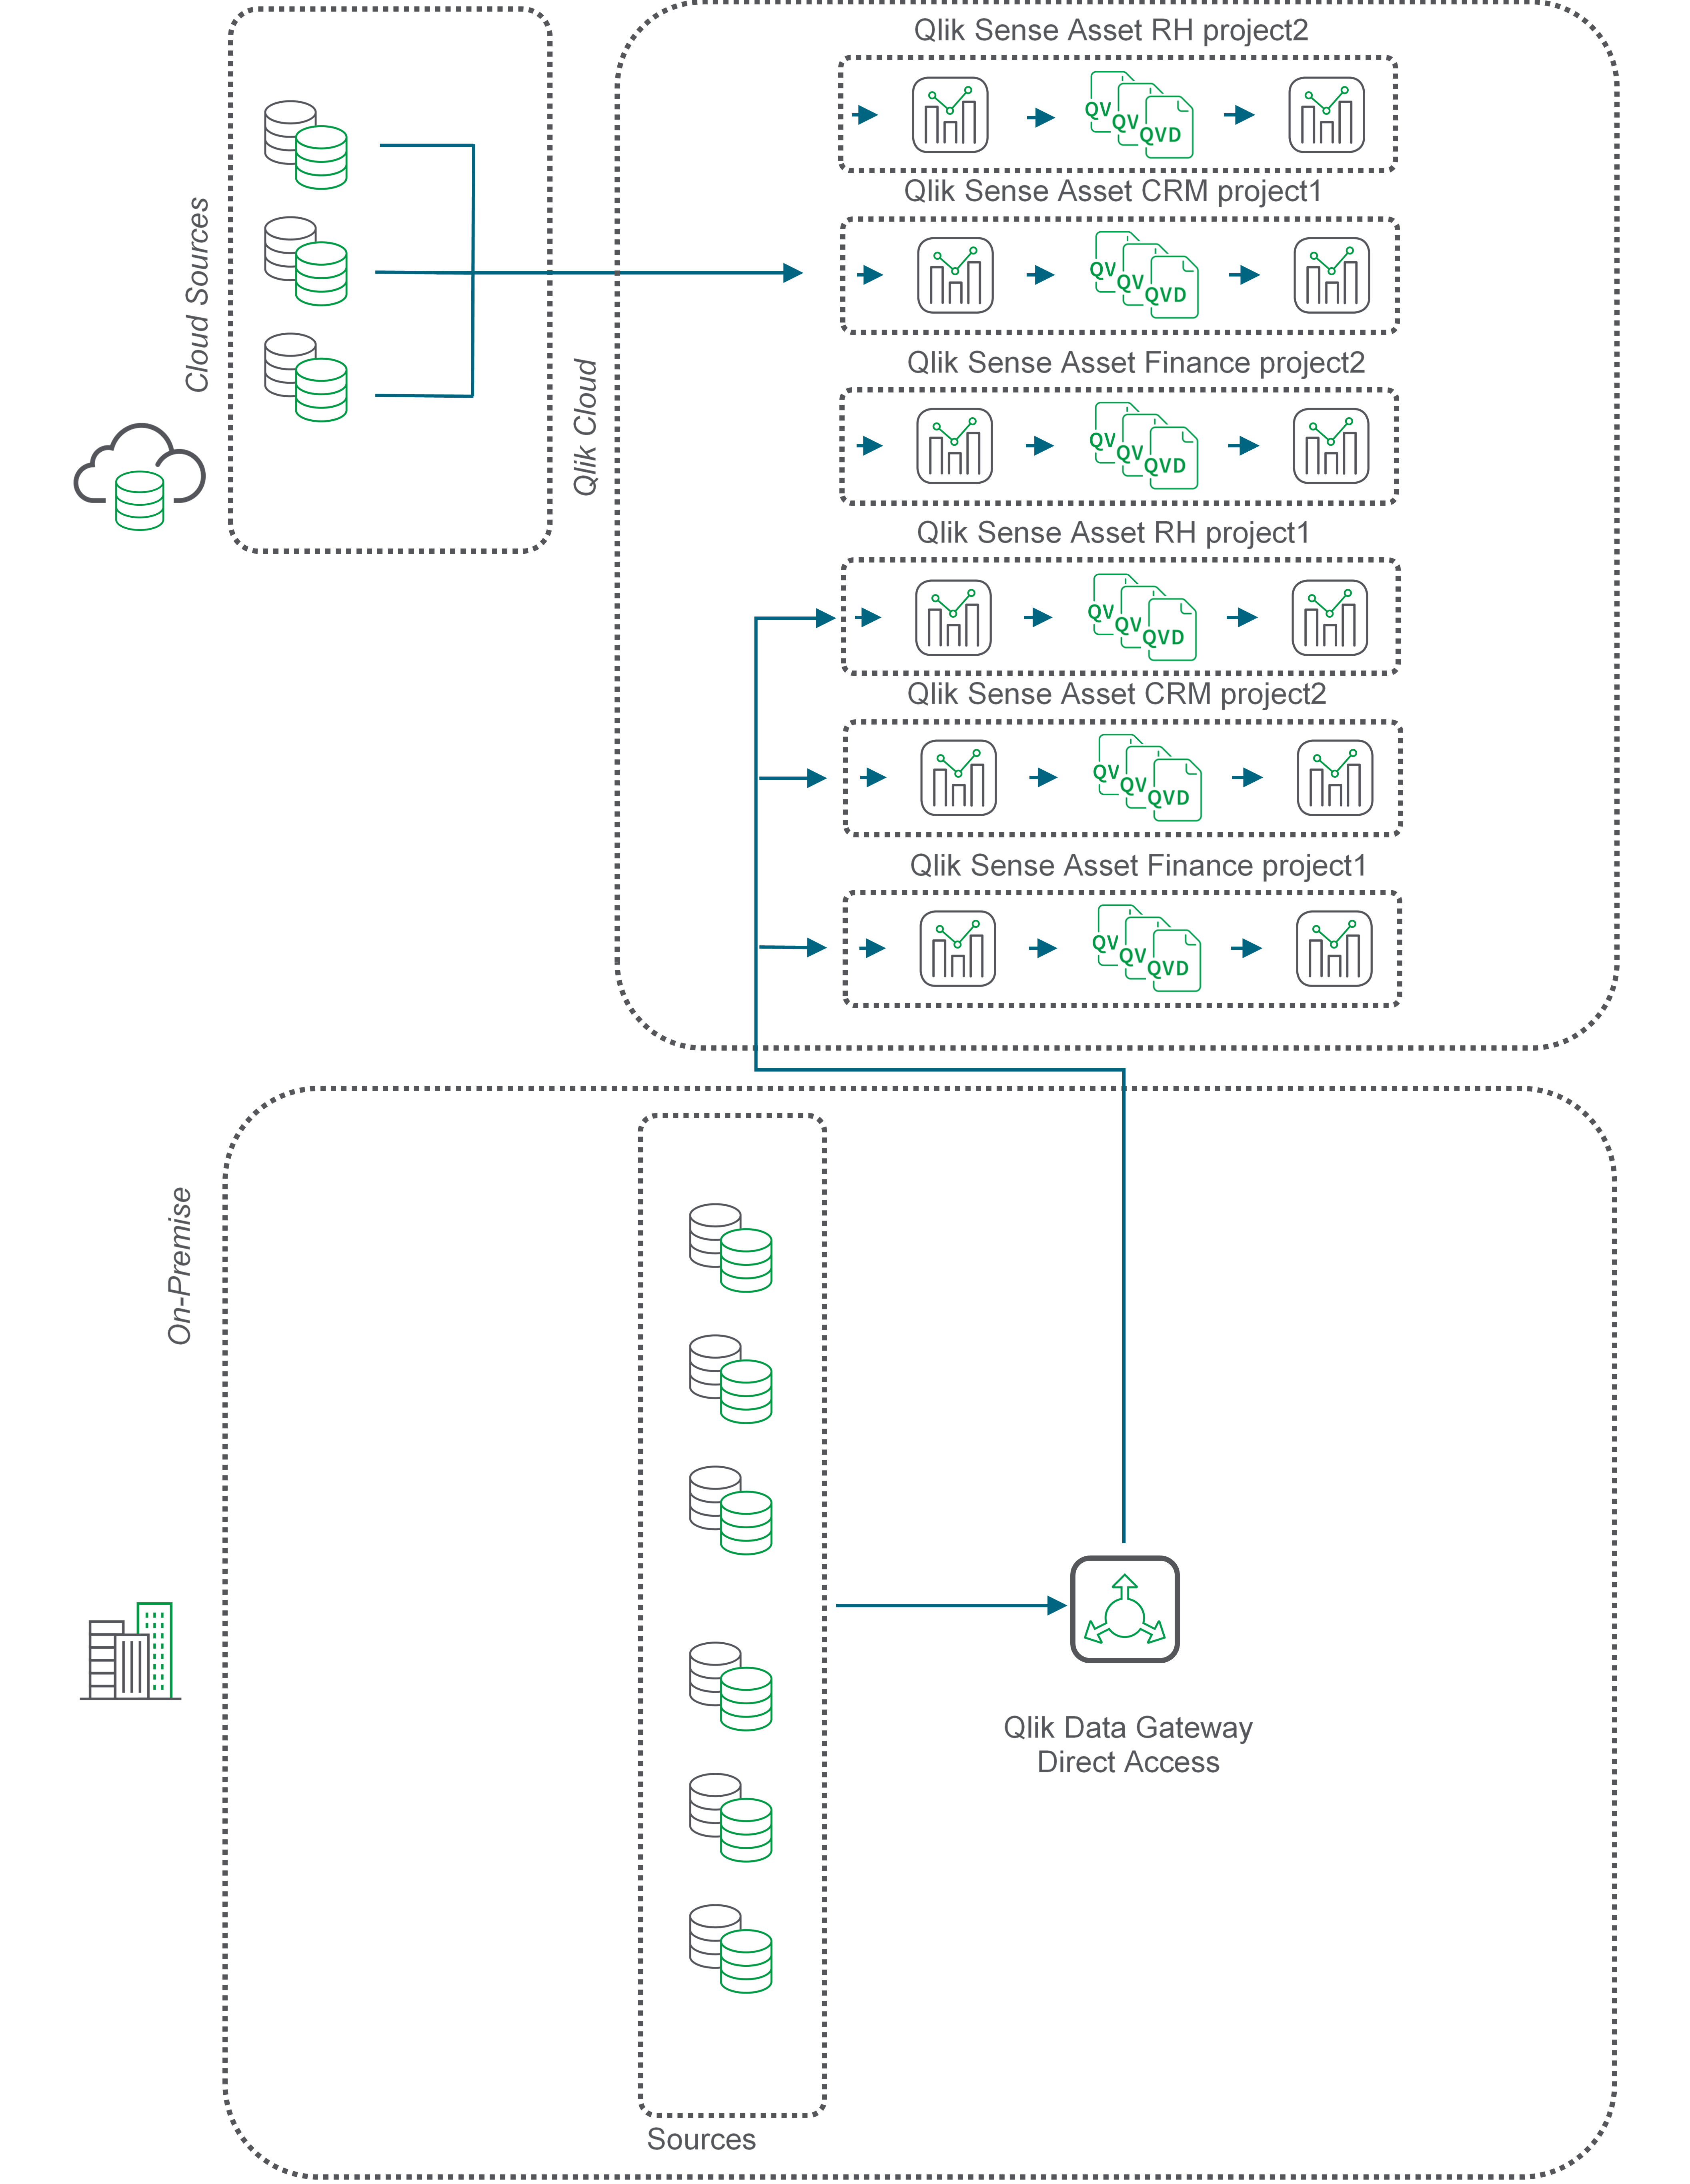 Блок-схема, описывающая перенос QVD с использованием прямого доступа через шлюз данных Qlik.